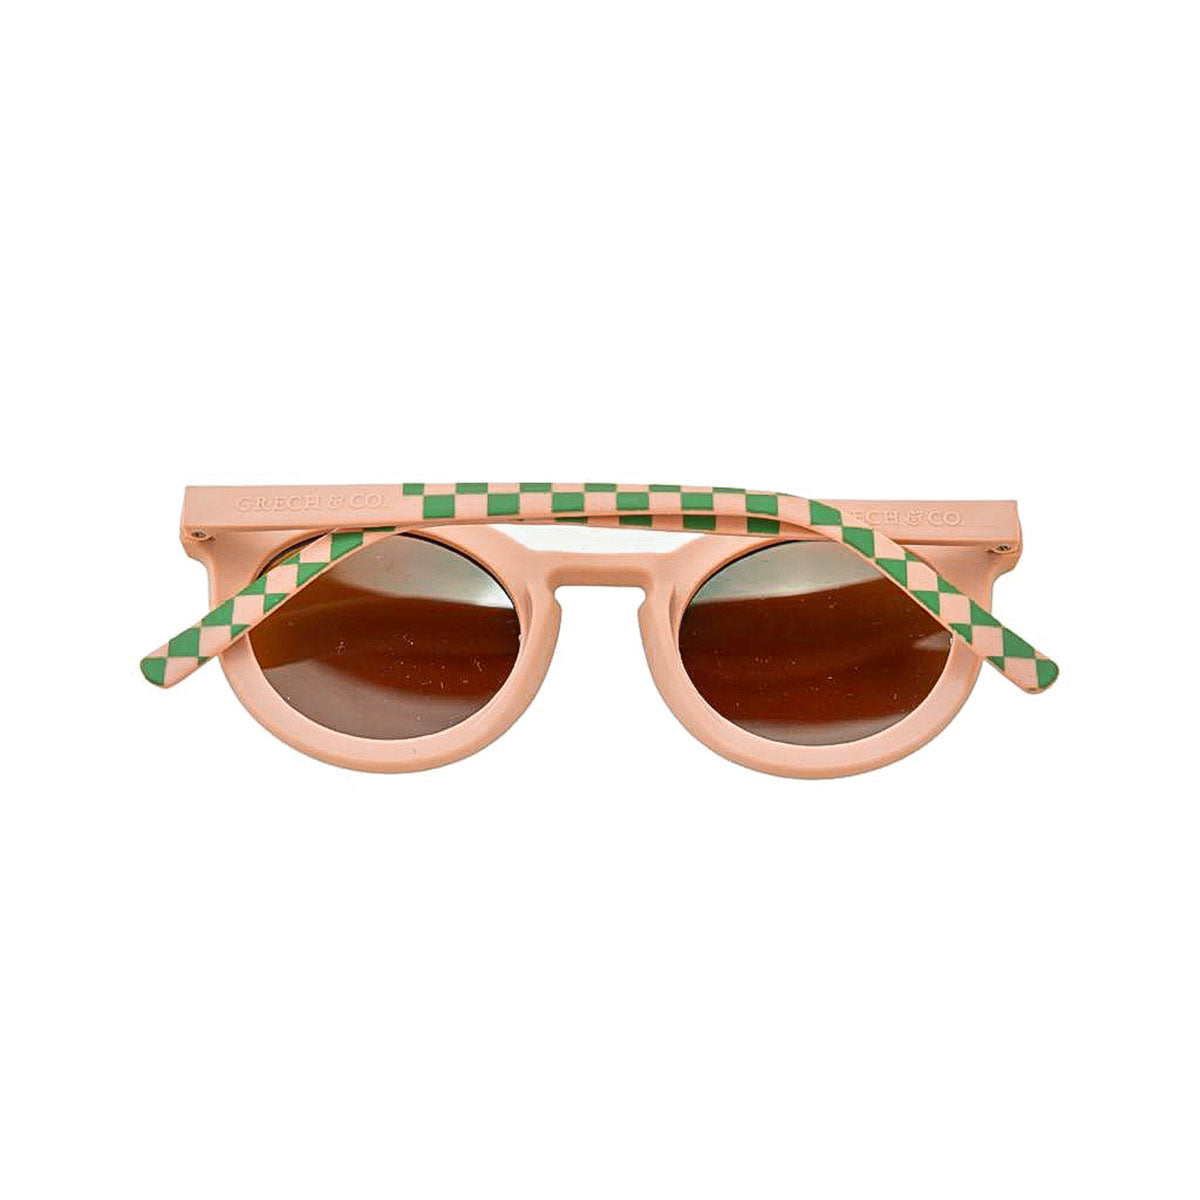 De Grech & co. zonnebril classic buigbaar adult in de kleur checks sunset + orchard is de perfecte keuze voor trendy en modebewuste moeders en hun mini-me’s. De zonnebril is namelijk ook beschikbaar voor kinderen en baby's! VanZus